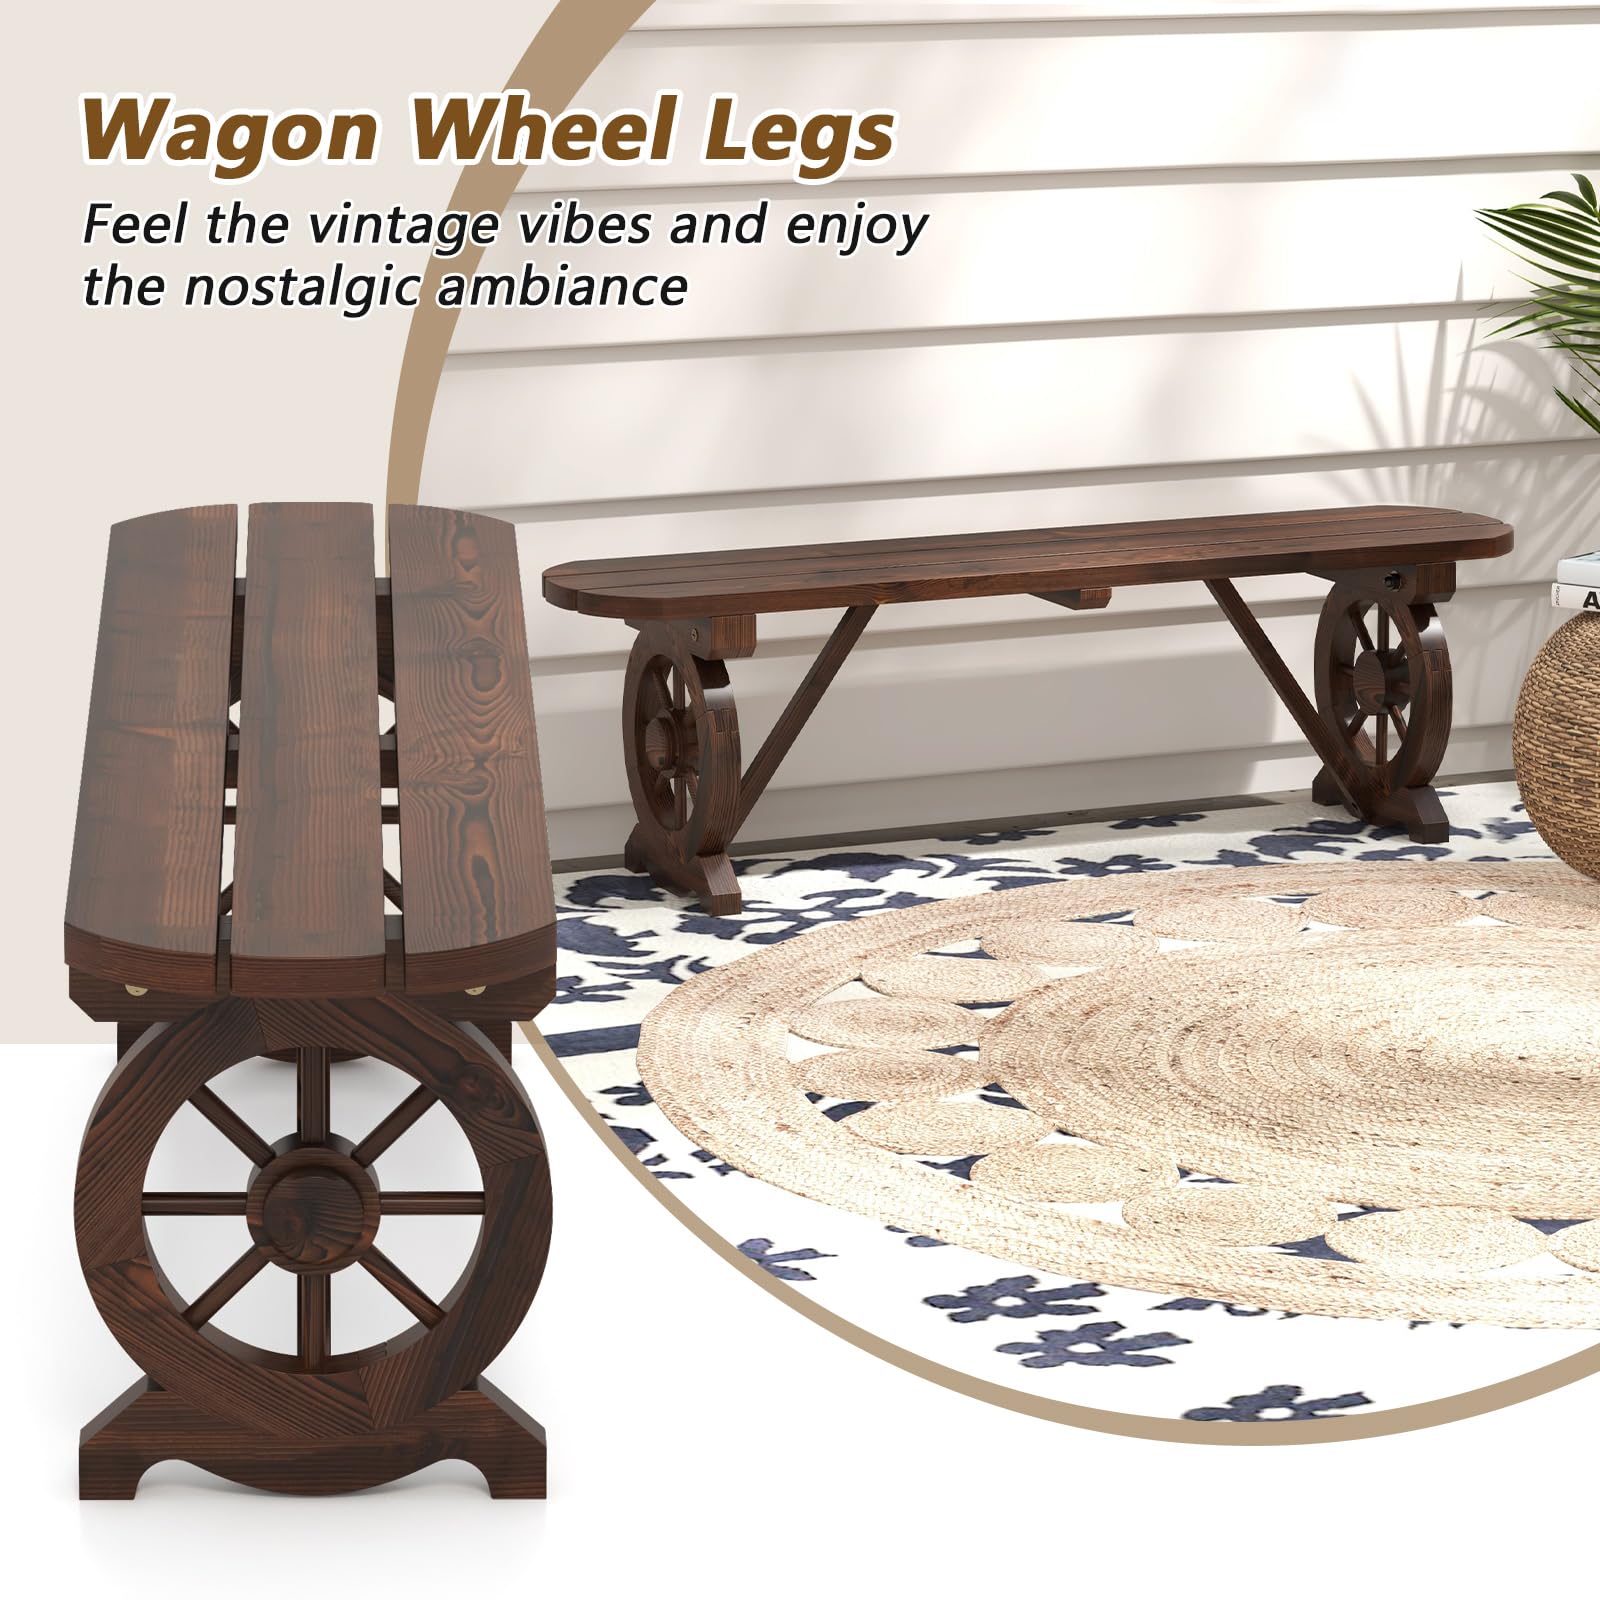 Giantex 2-Person Wooden Outdoor Bench - Patio Bench w/Wagon Wheel Legs